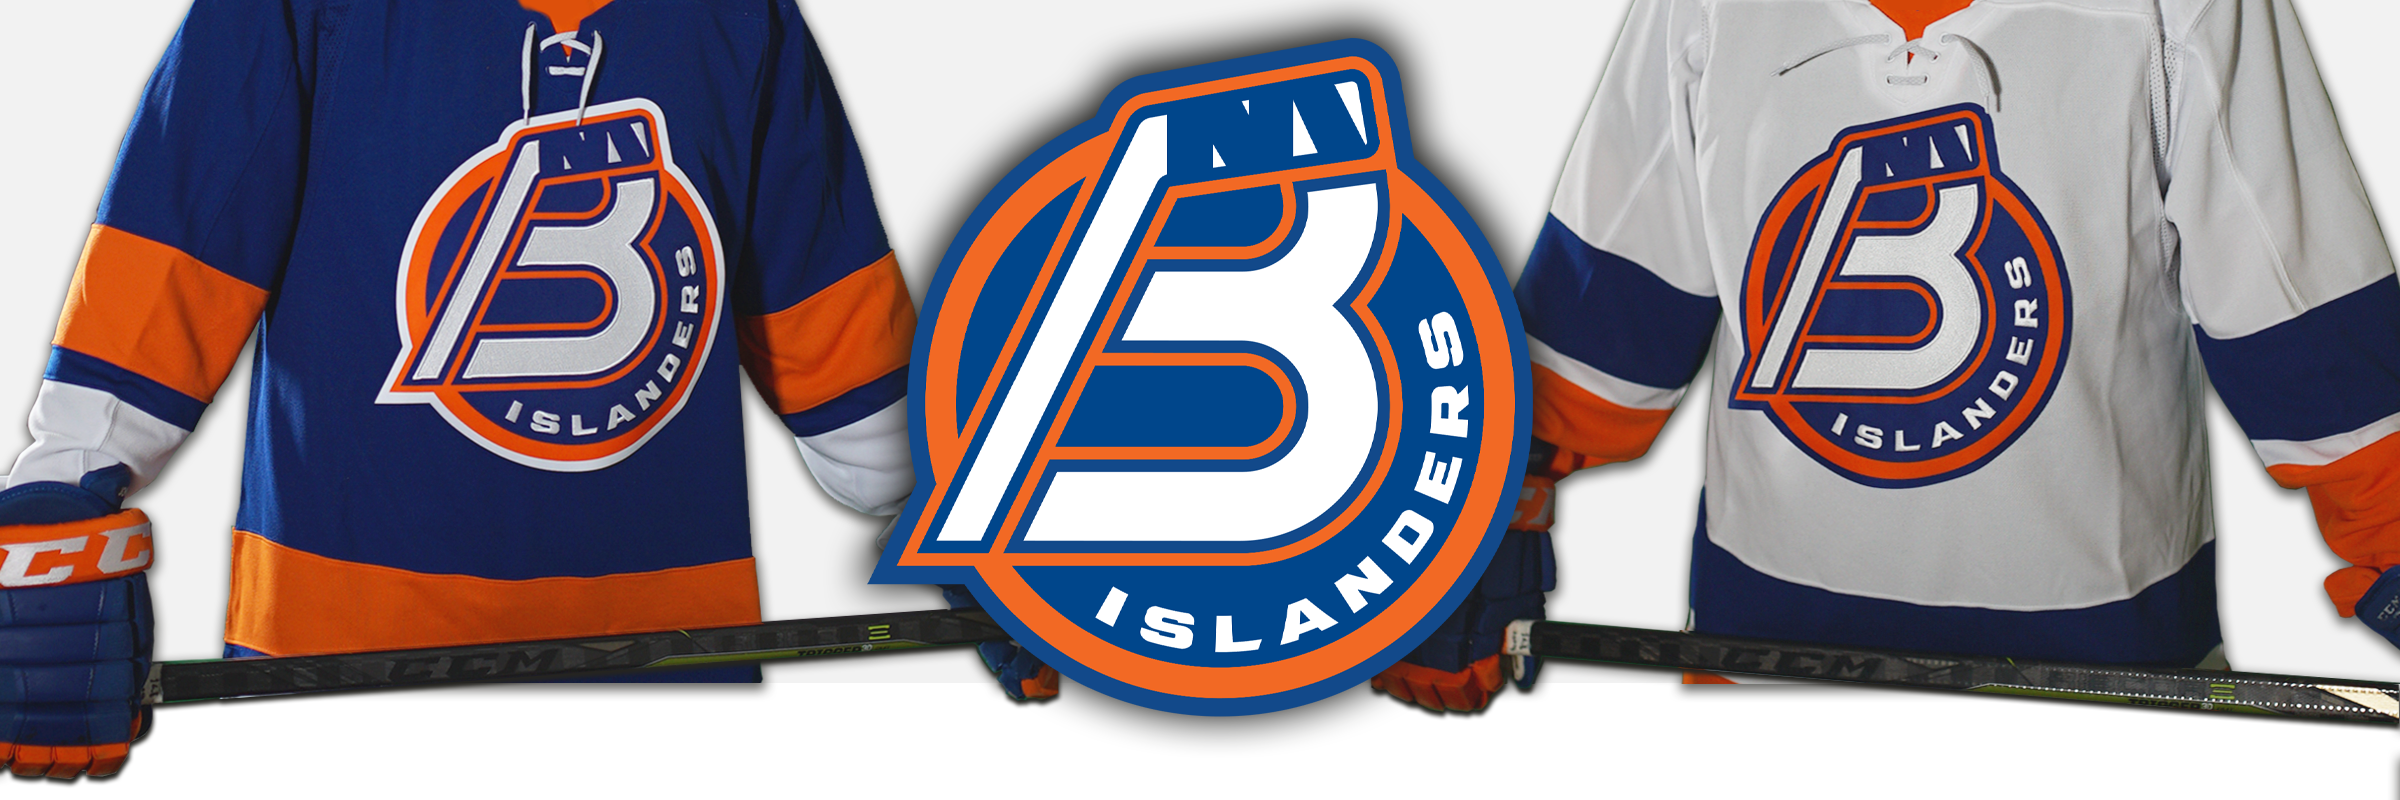 AHL Bridgeport Islanders FISHERMAN Jersey Released! 